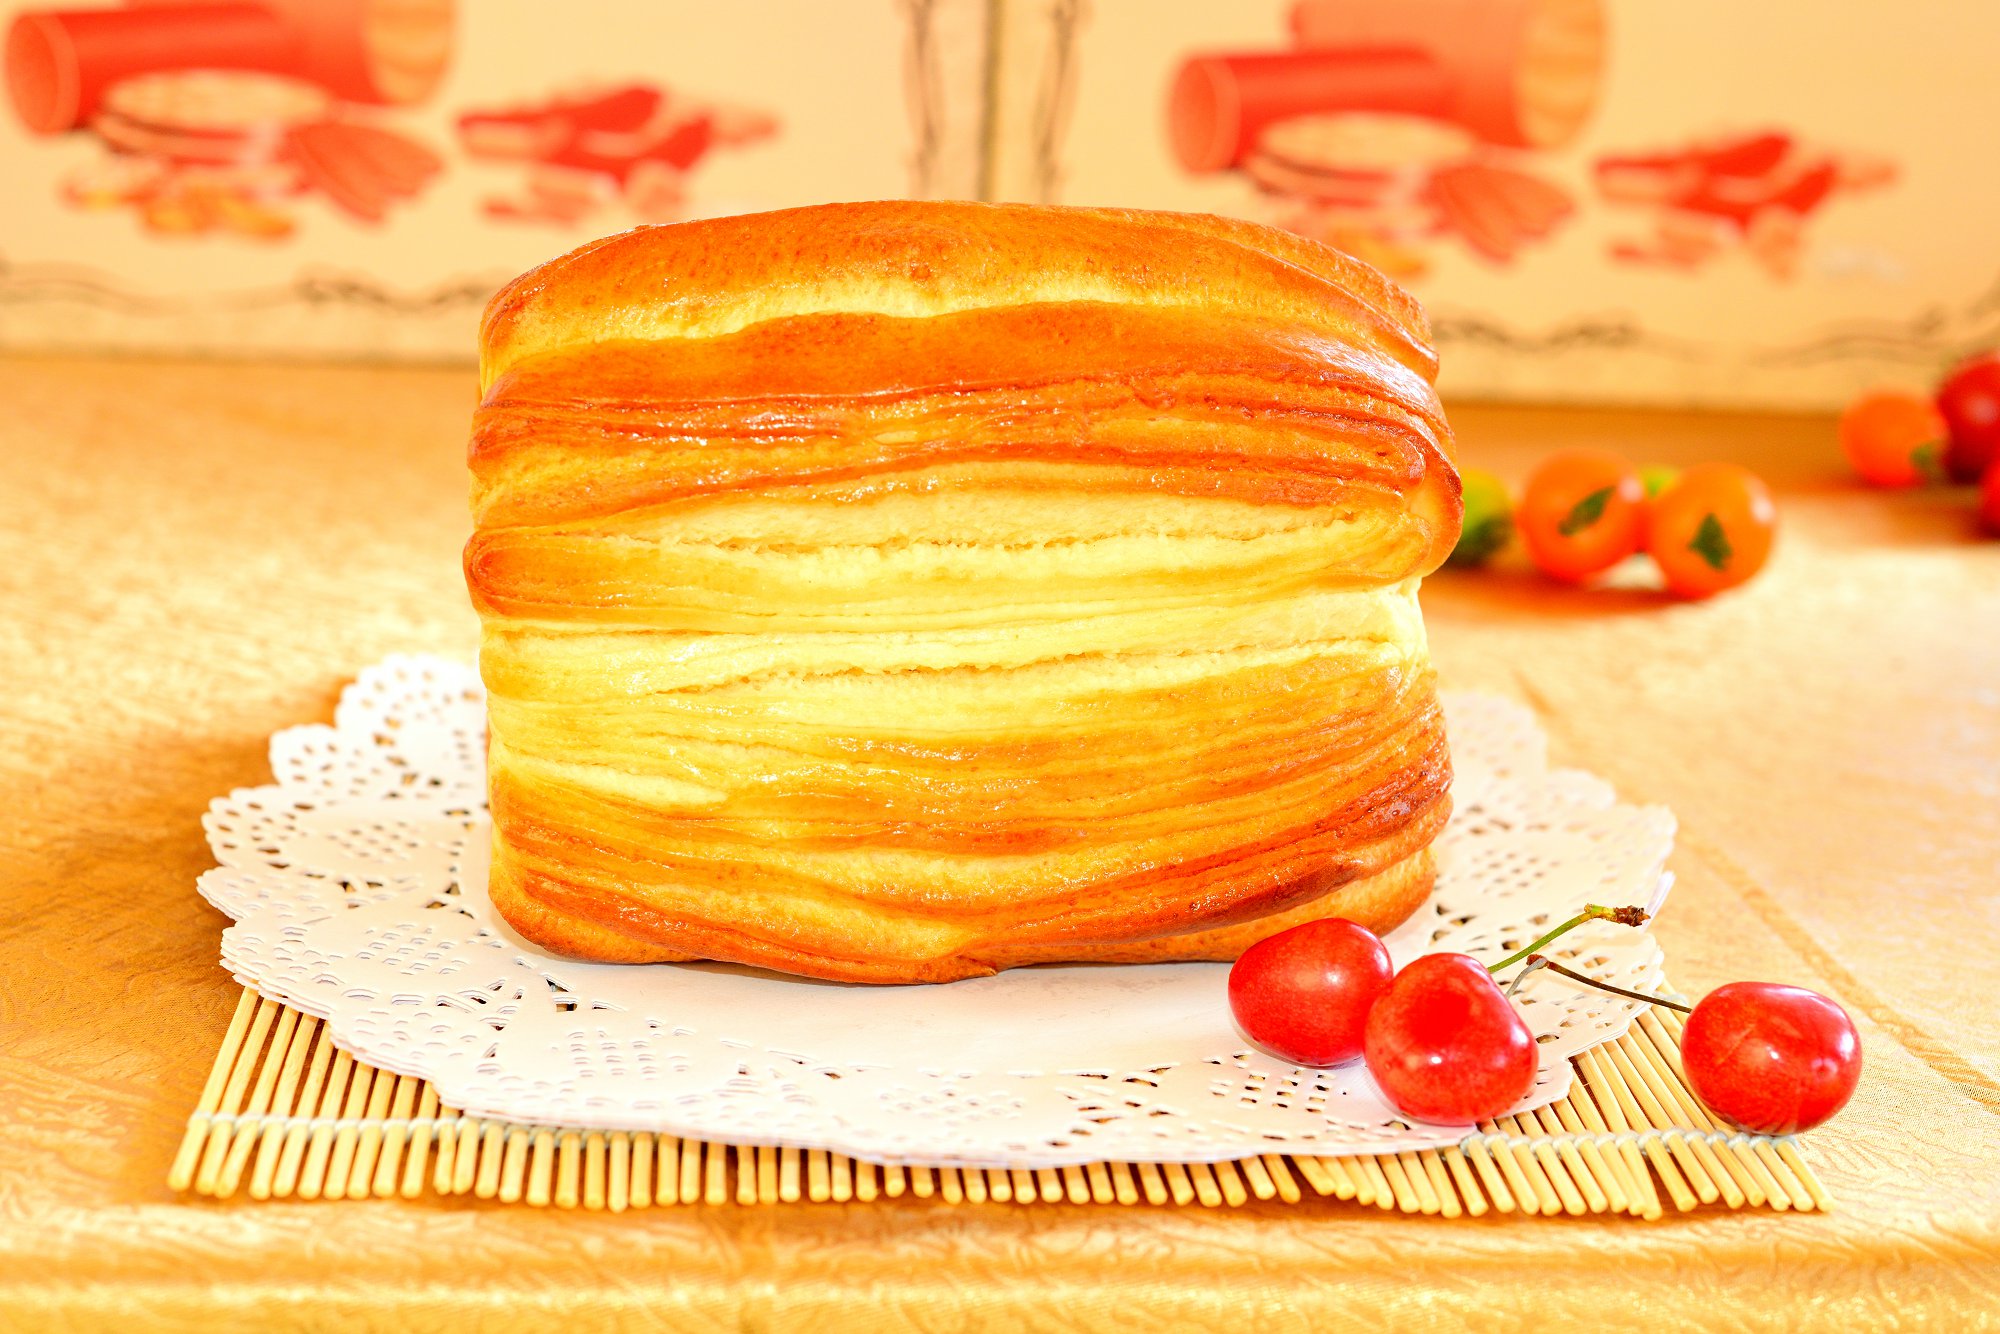 嘎丽娅面包 - 俄式面包 - 满洲利亚俄罗斯食品加工有限公司官网-纯正俄罗斯提拉米苏|香肠|列巴|特色俄罗斯食品